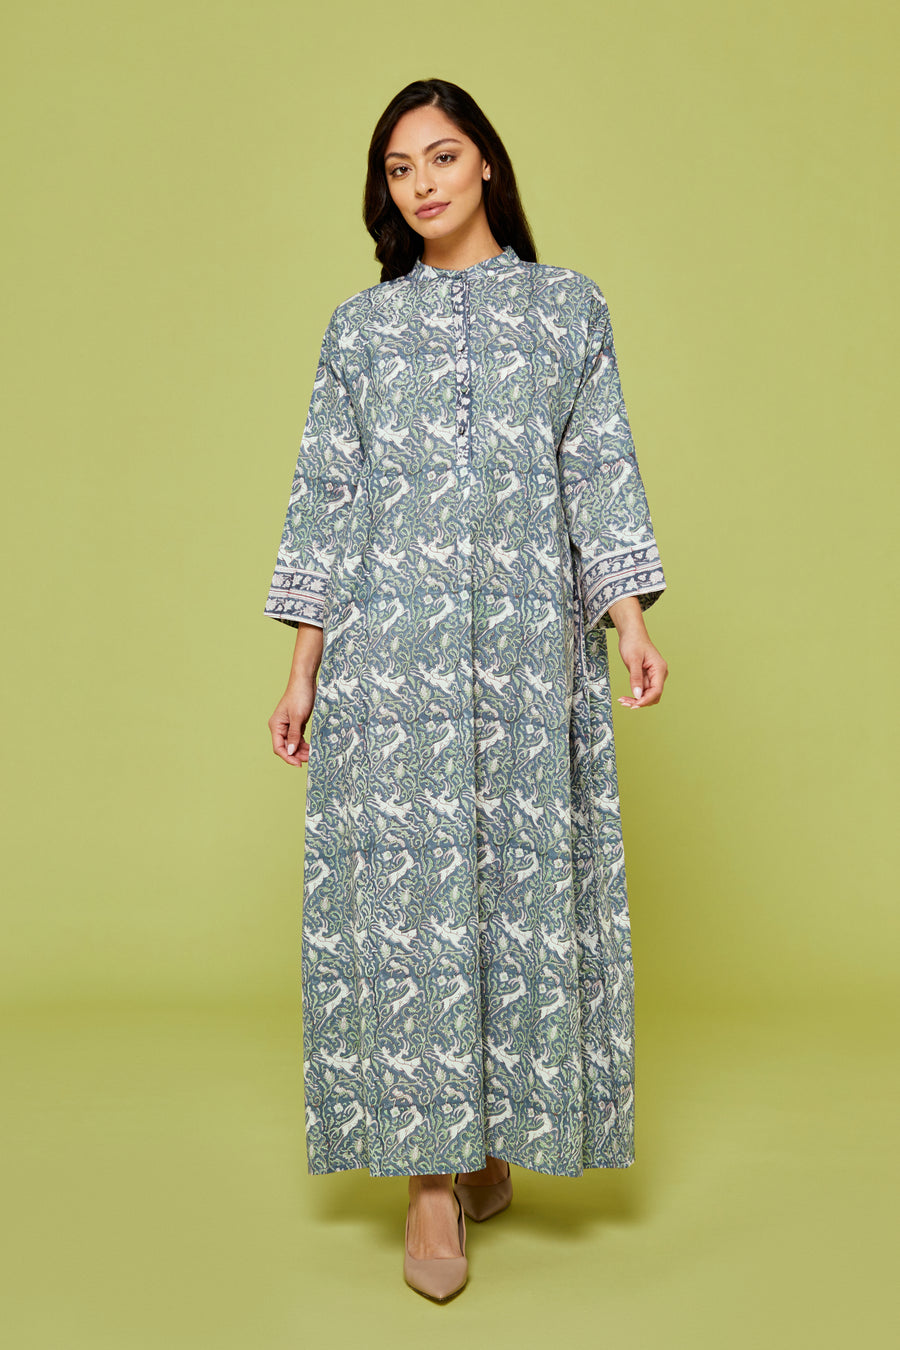 Hiran Block Printed Dress in Lapis Blue